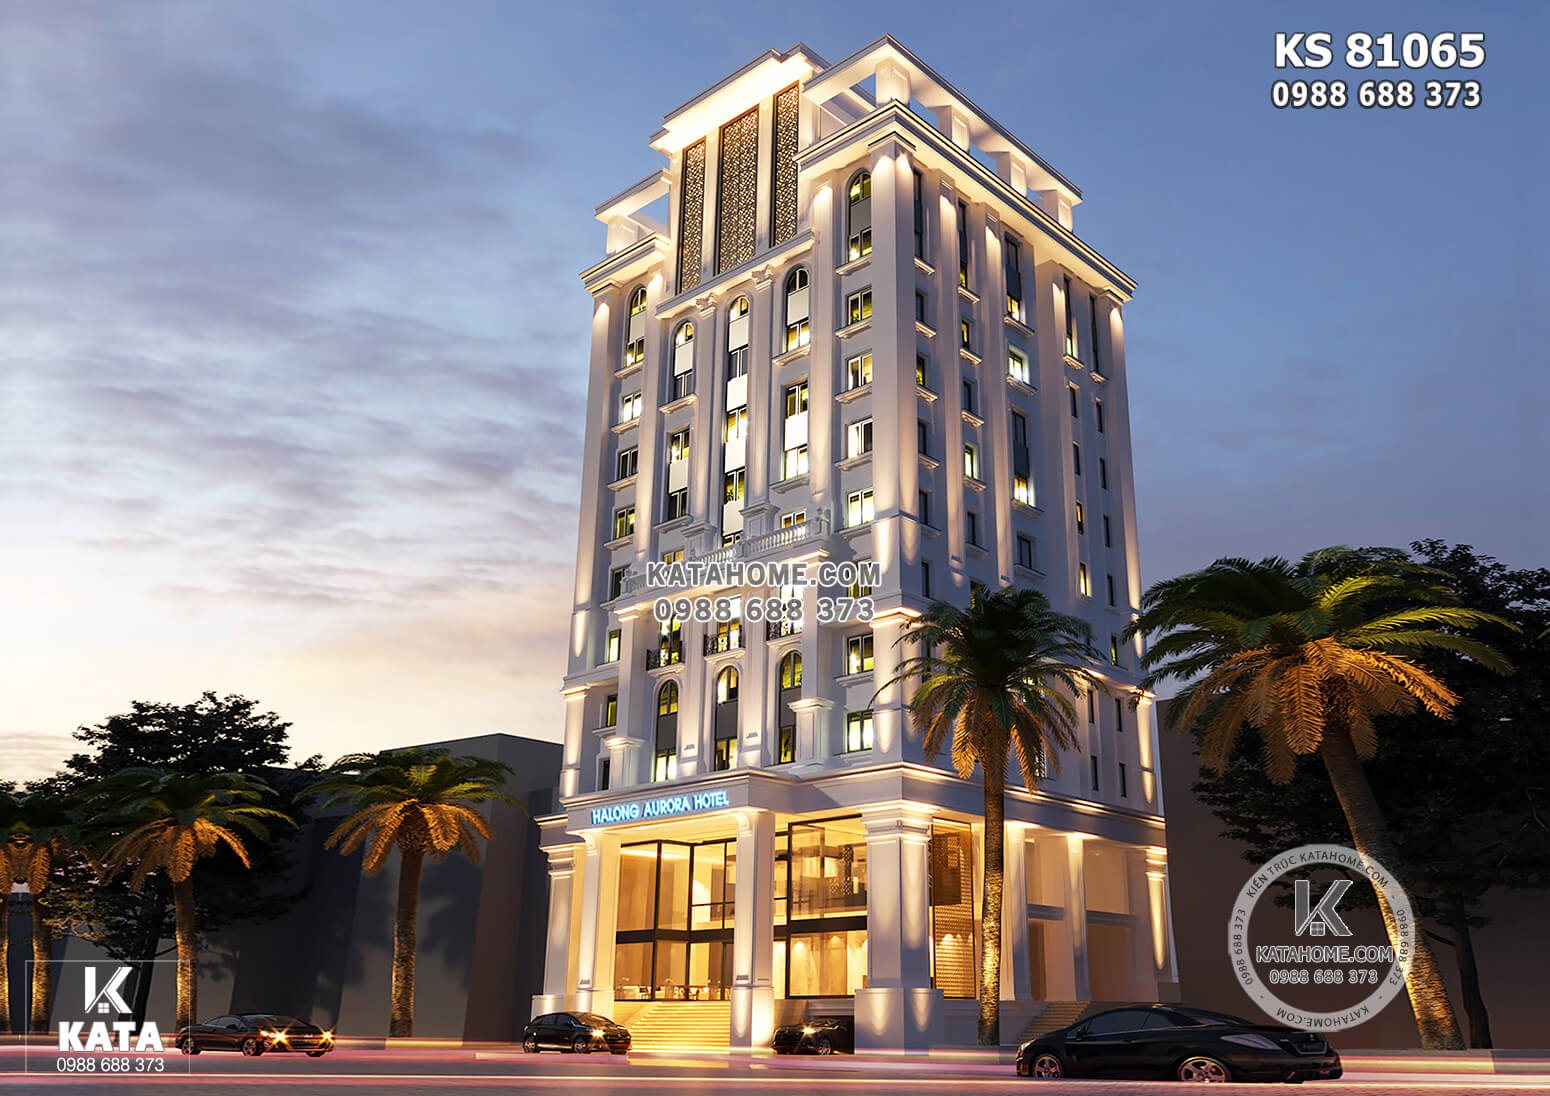 Thiết kế khách sạn 6 tầng tân cổ điển đẹp tại Hà Nội  KS 81068